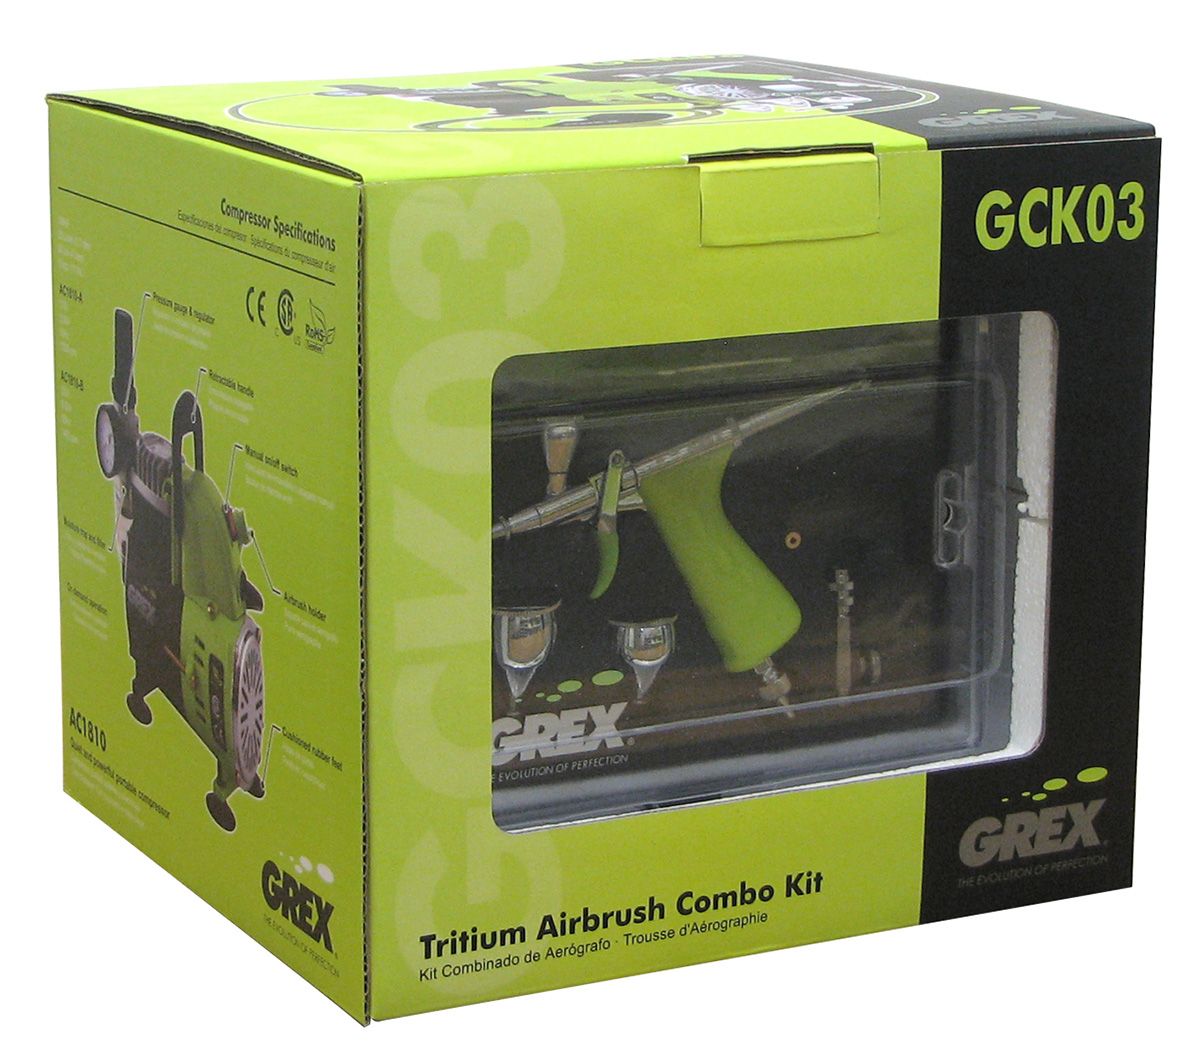 Grex Tritium.TG3 Airbrush Combo Kit